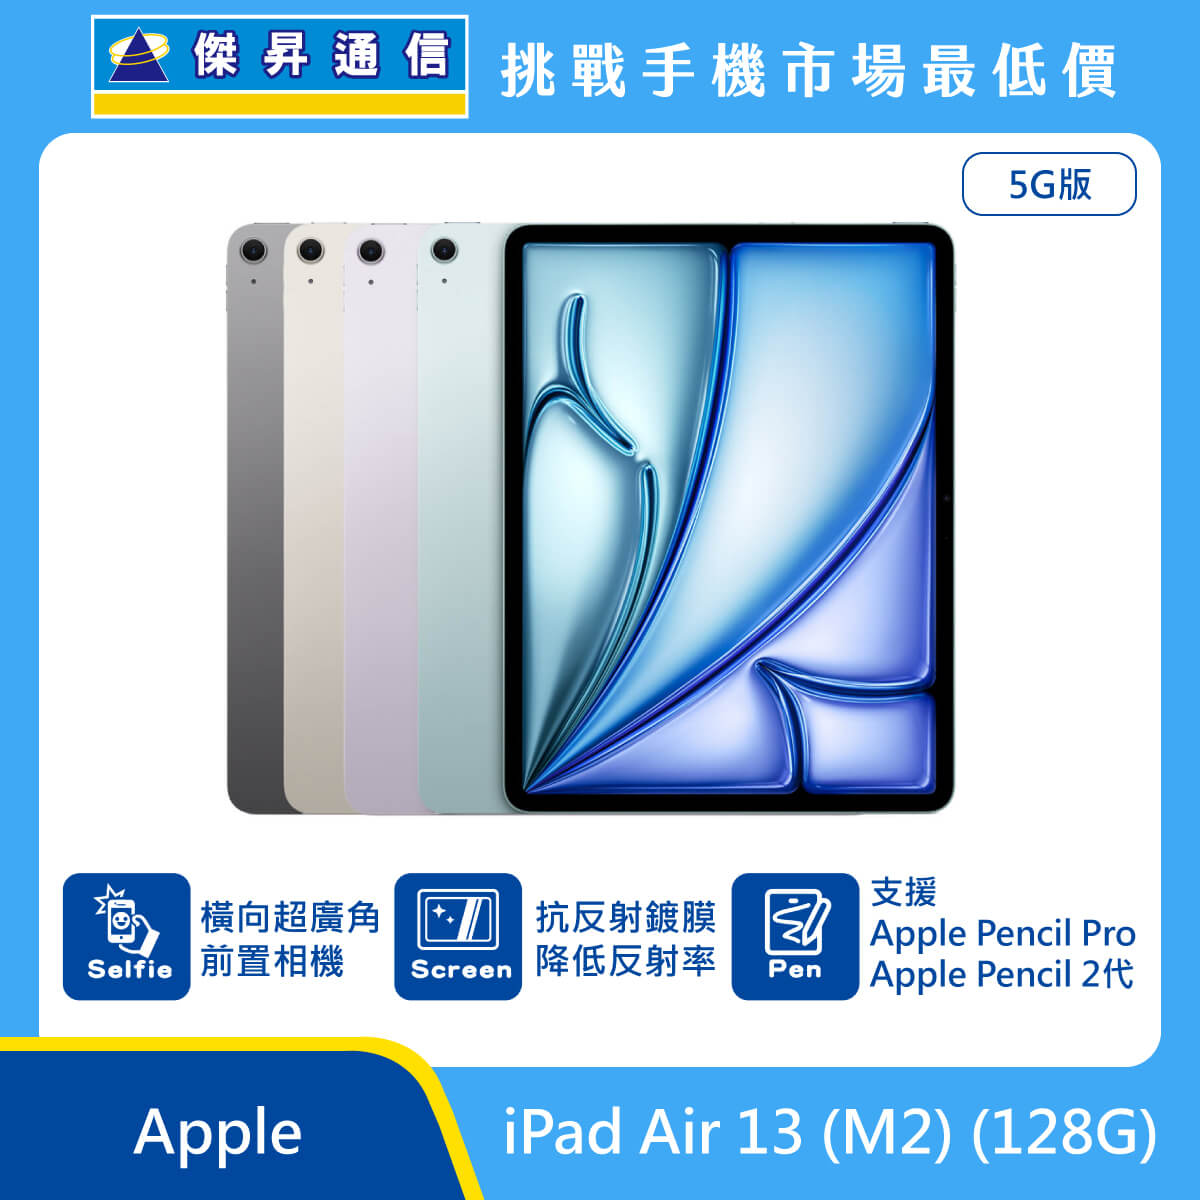 Apple 平板 iPad Air 13 M2 (128G) 即將上市